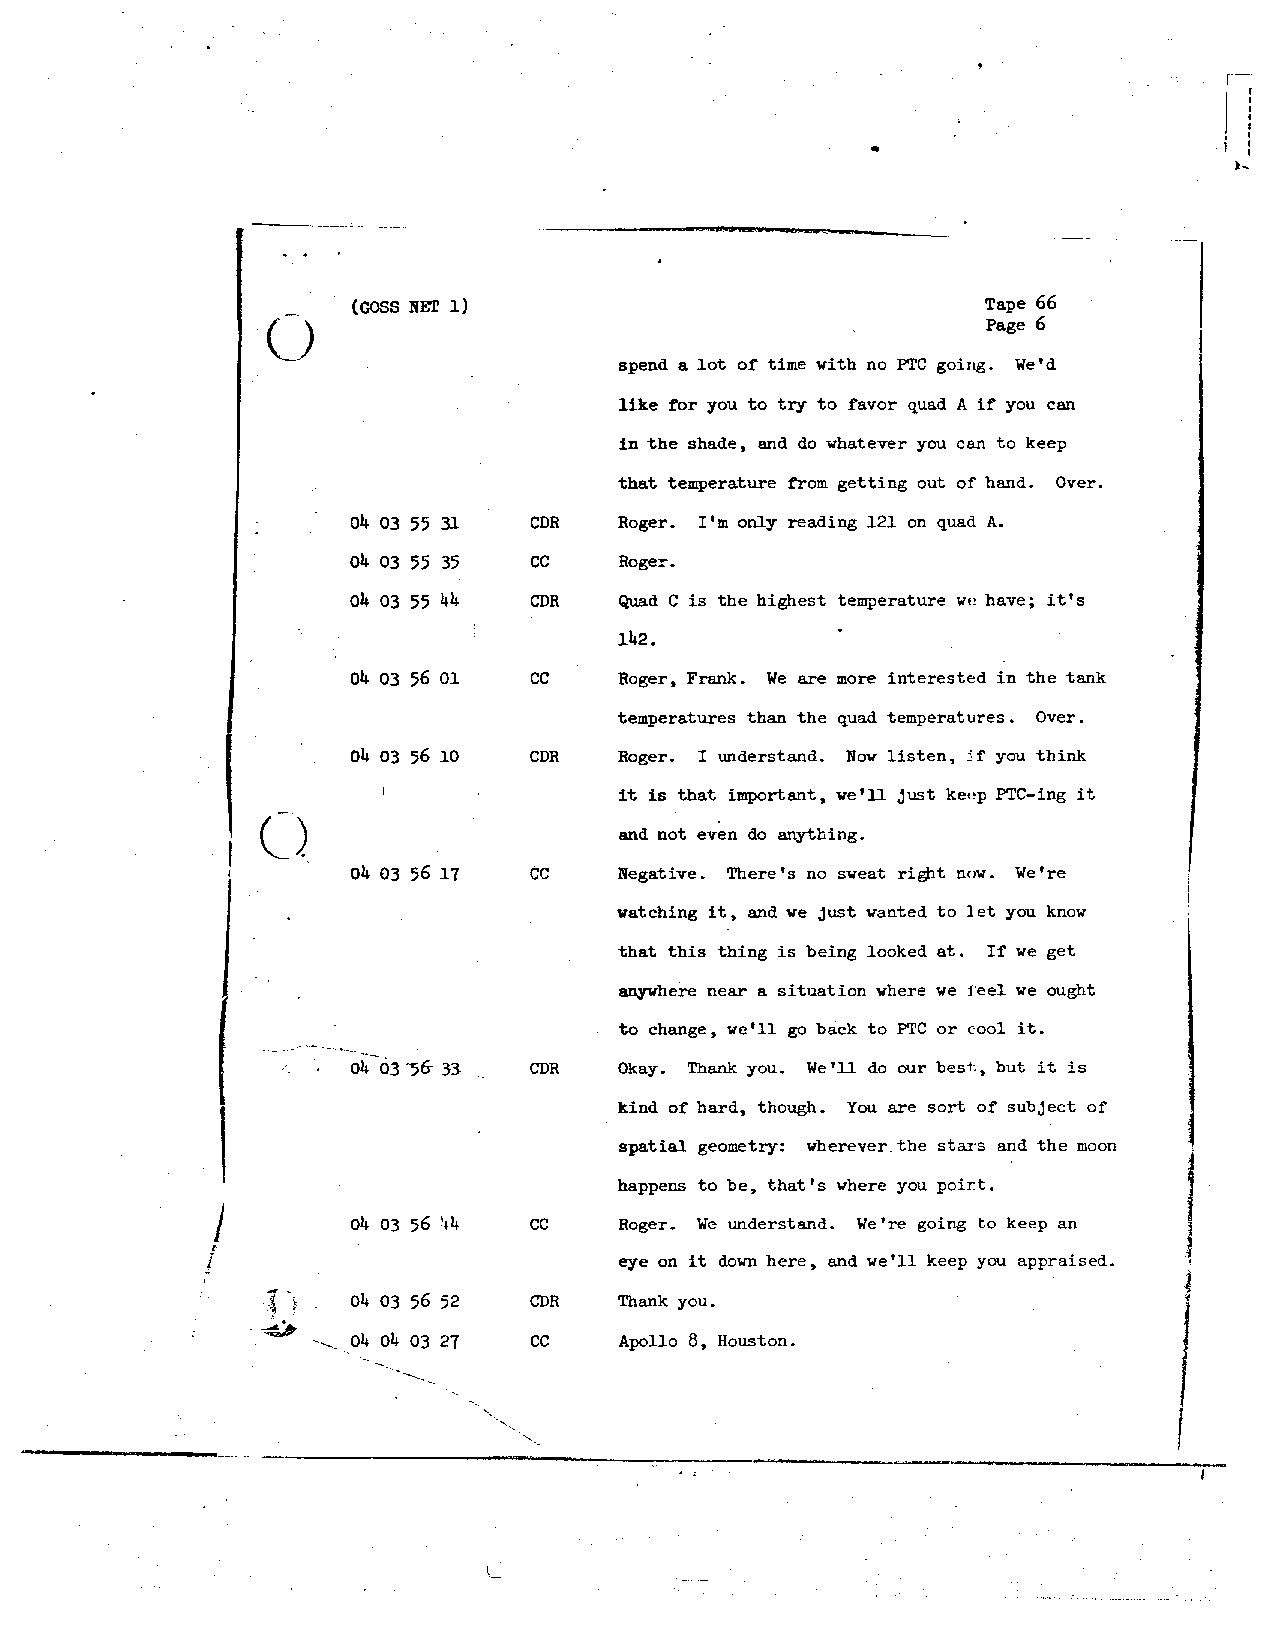 Page 525 of Apollo 8’s original transcript